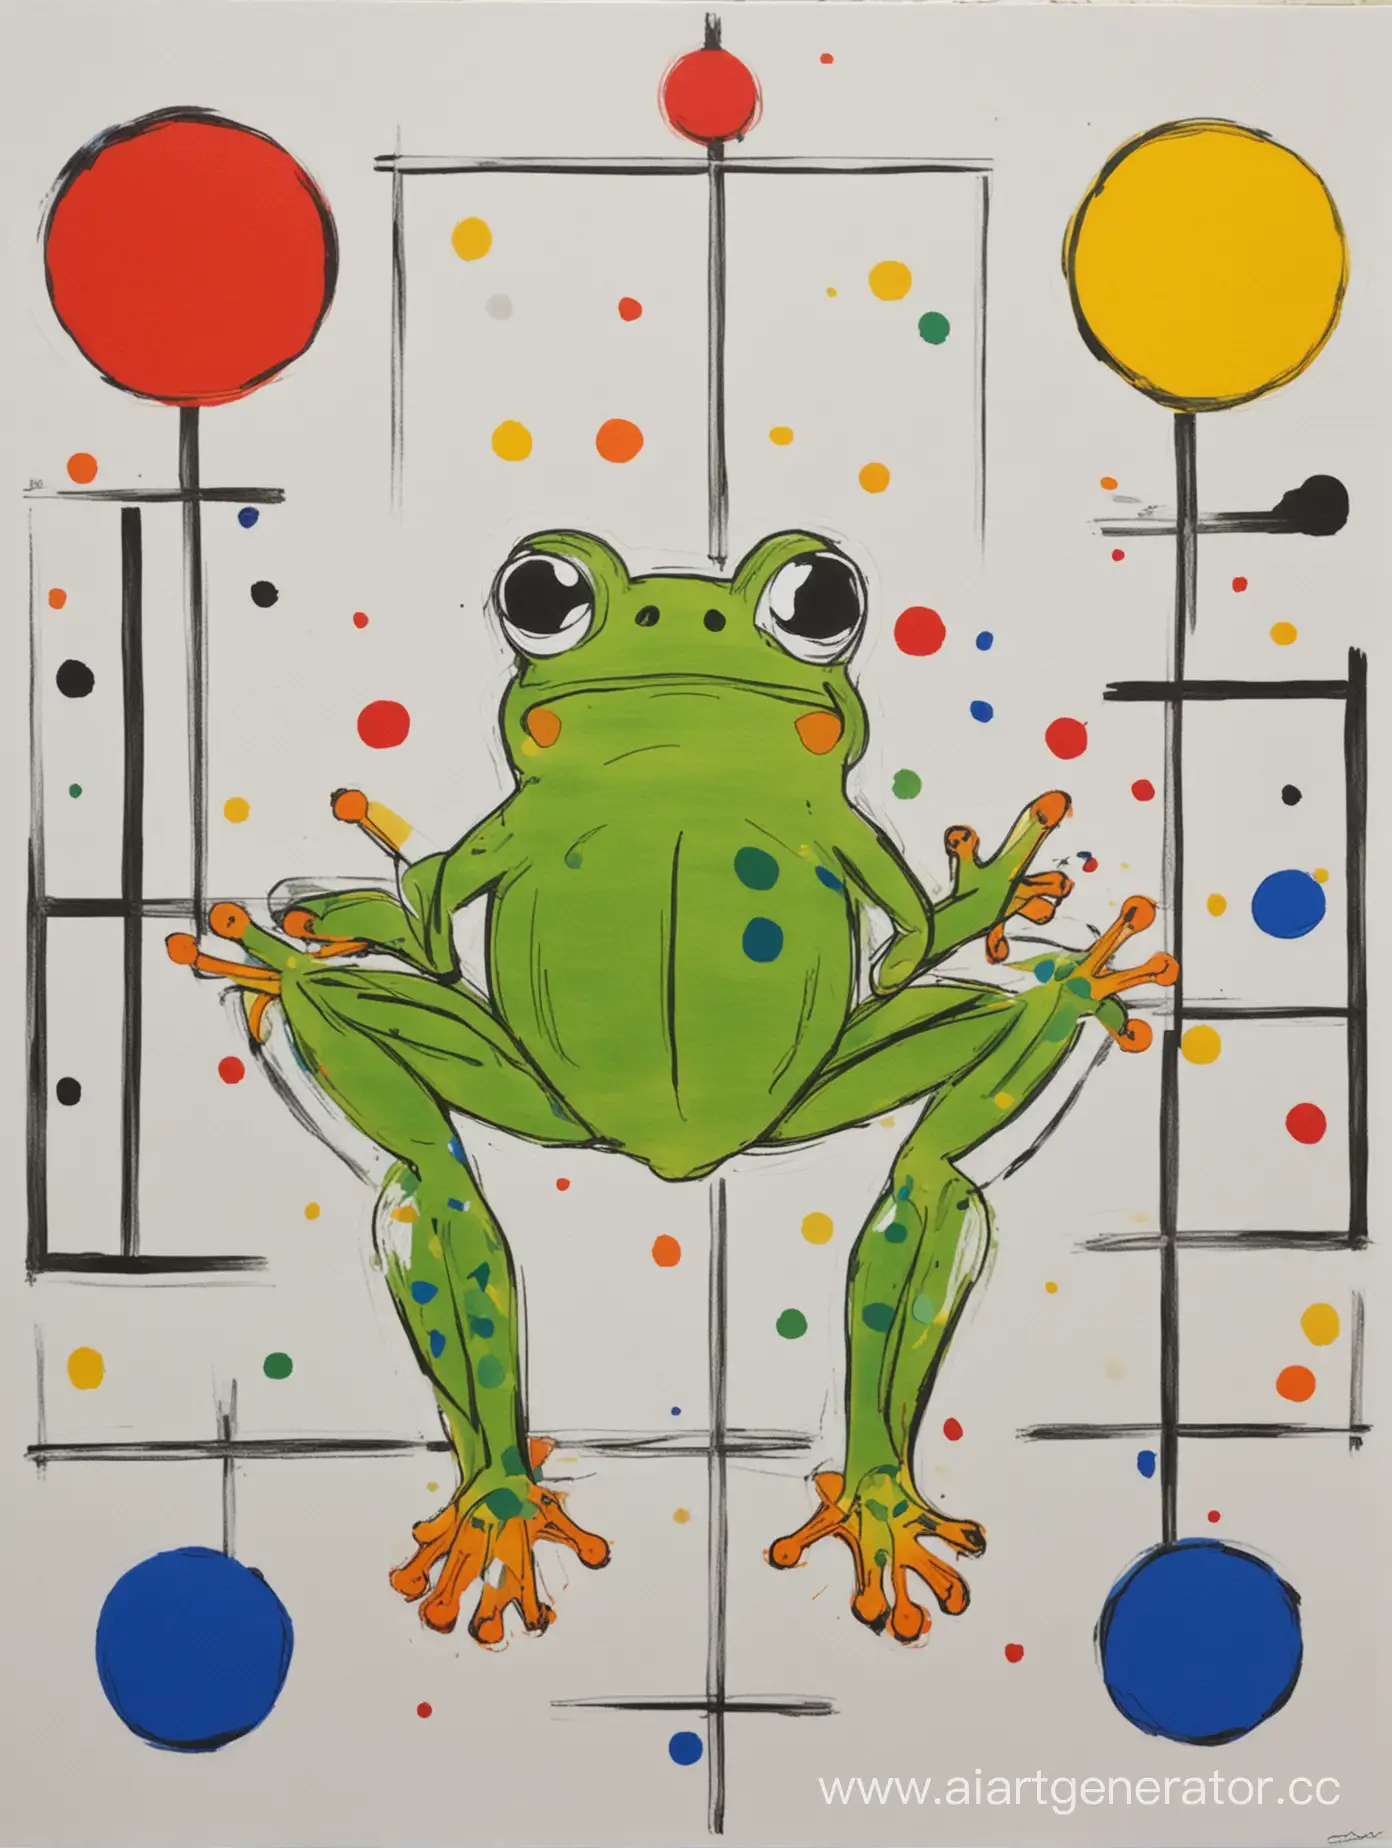 создай абстрактную картину с лягушкой в центре, нарисованной ребенком, в стиле конструктивизма вдохновившись Питом Модрианом и Яёй Кусама